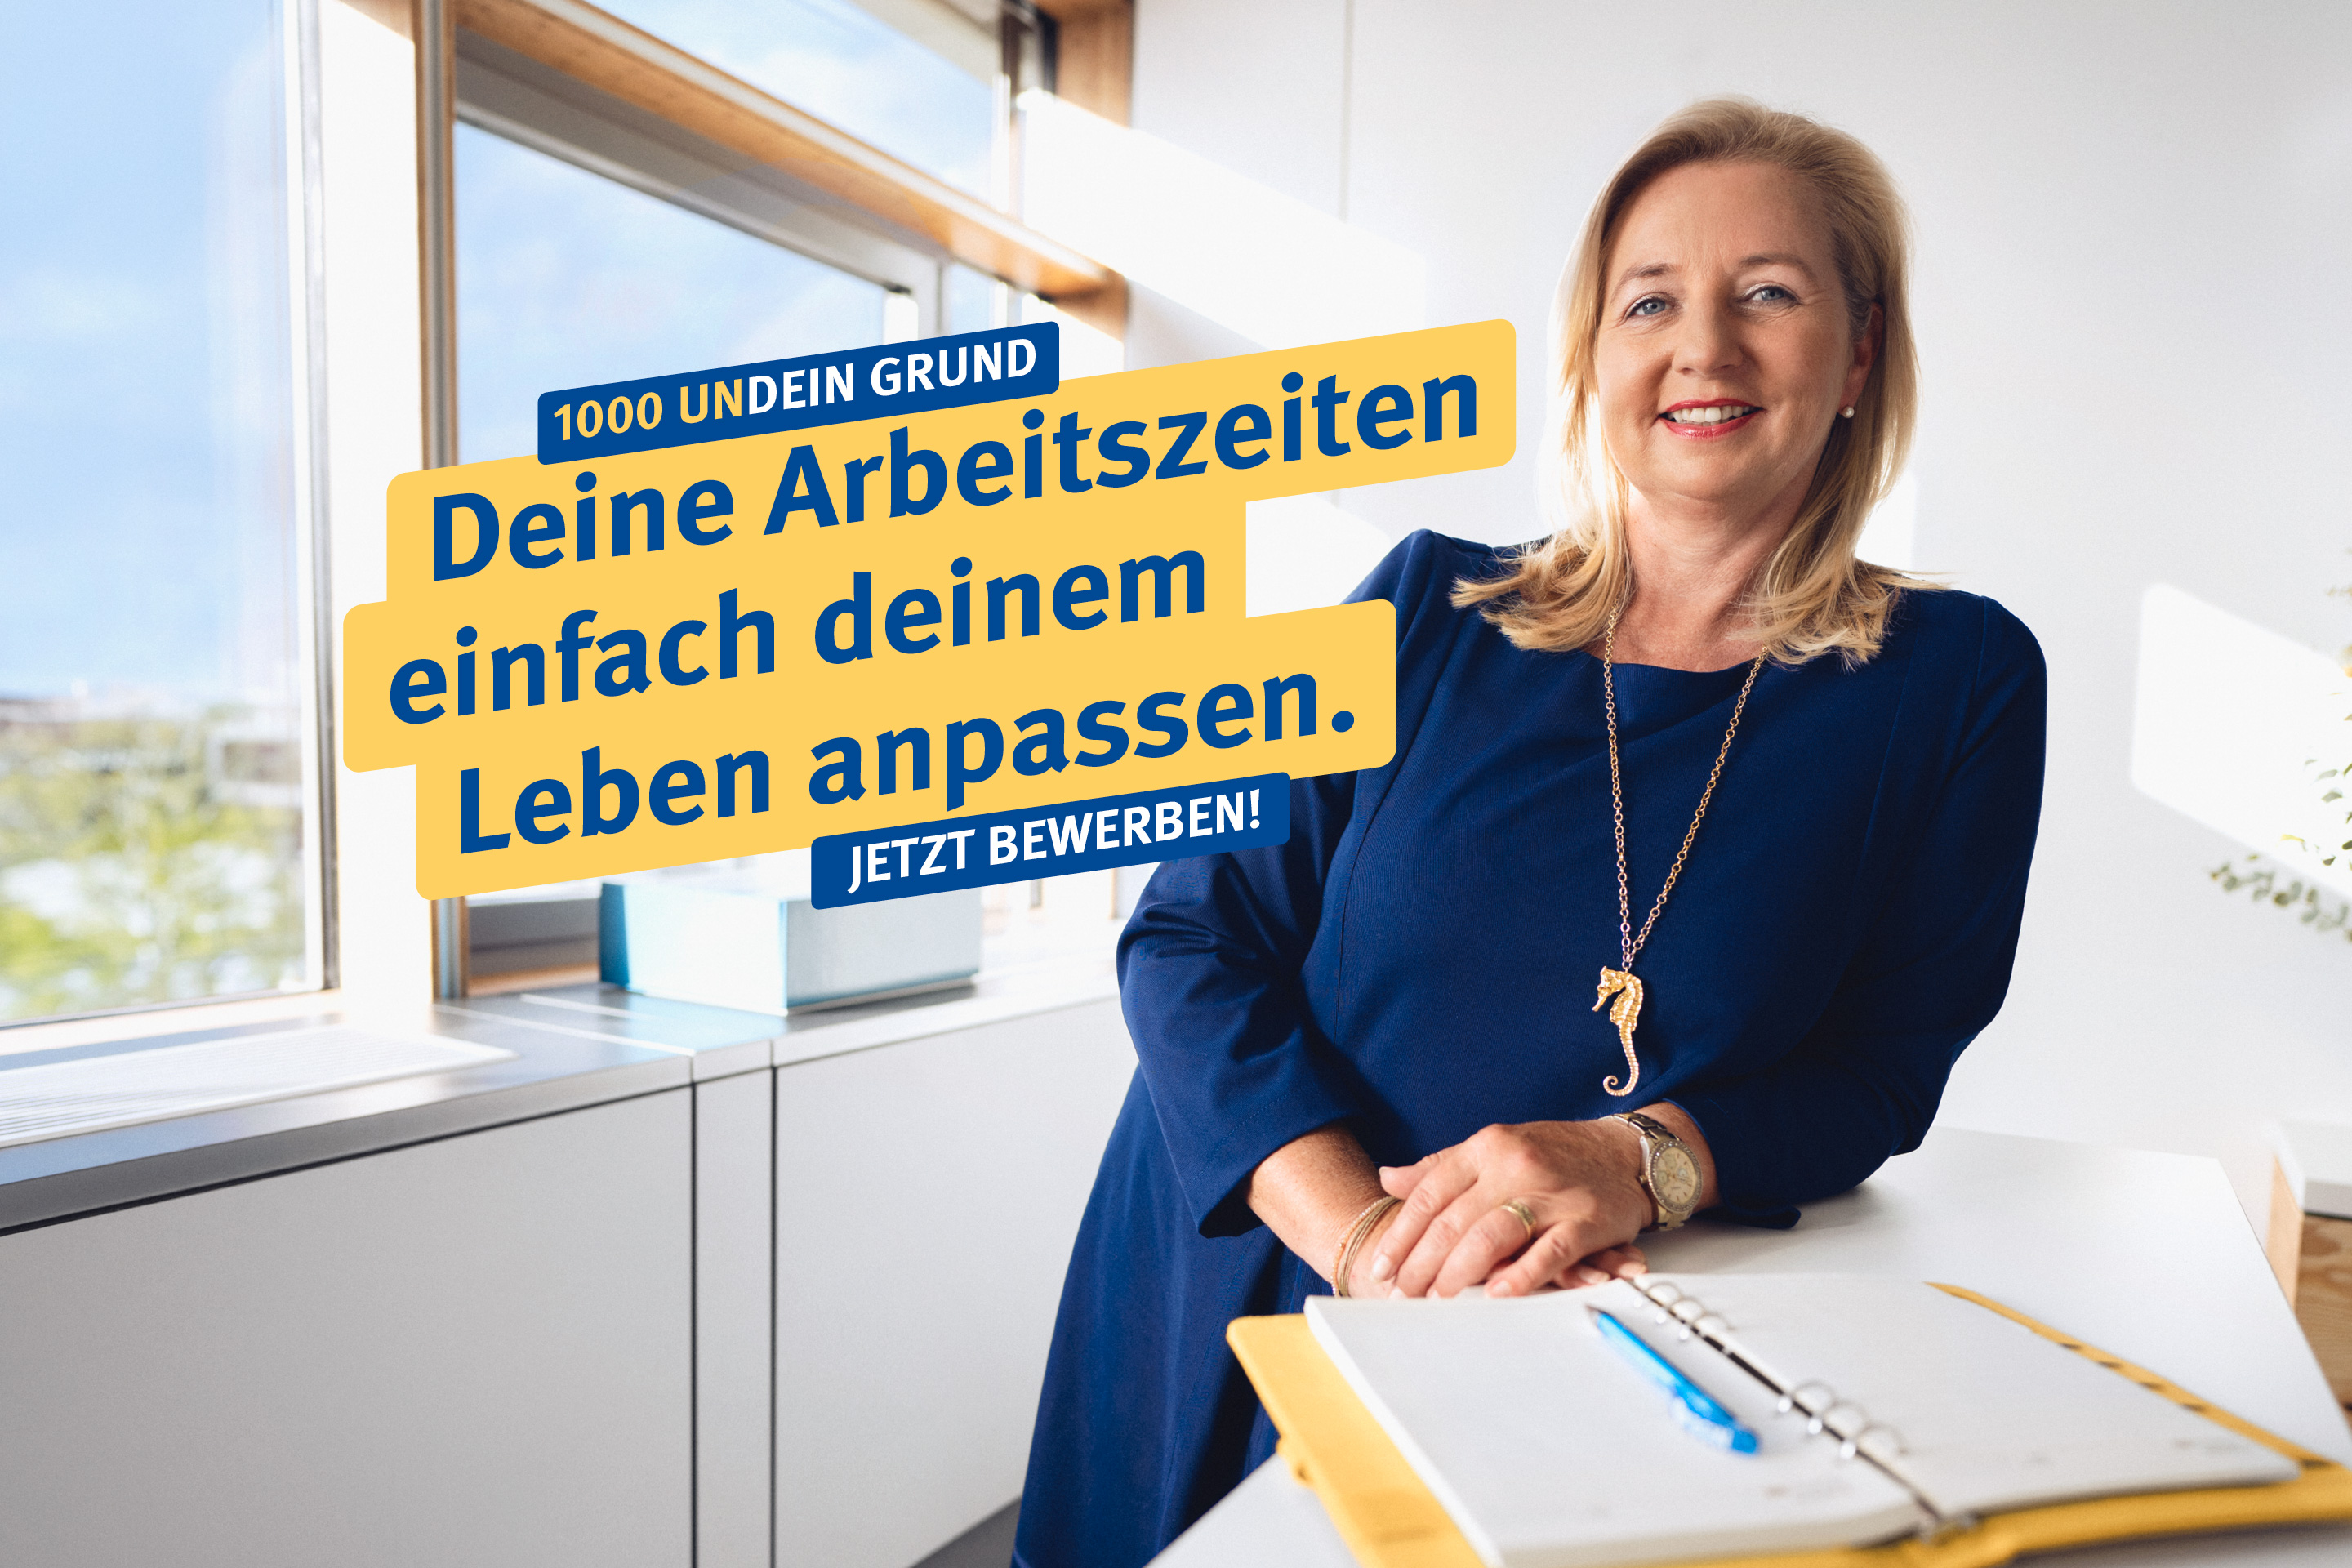 Eine Frau steht lächelnd im Büro, dazu der Text: "1000 undein Grund – Deine Arbeitszeiten einfach deinem Leben anpassen. Jetzt bewerben"